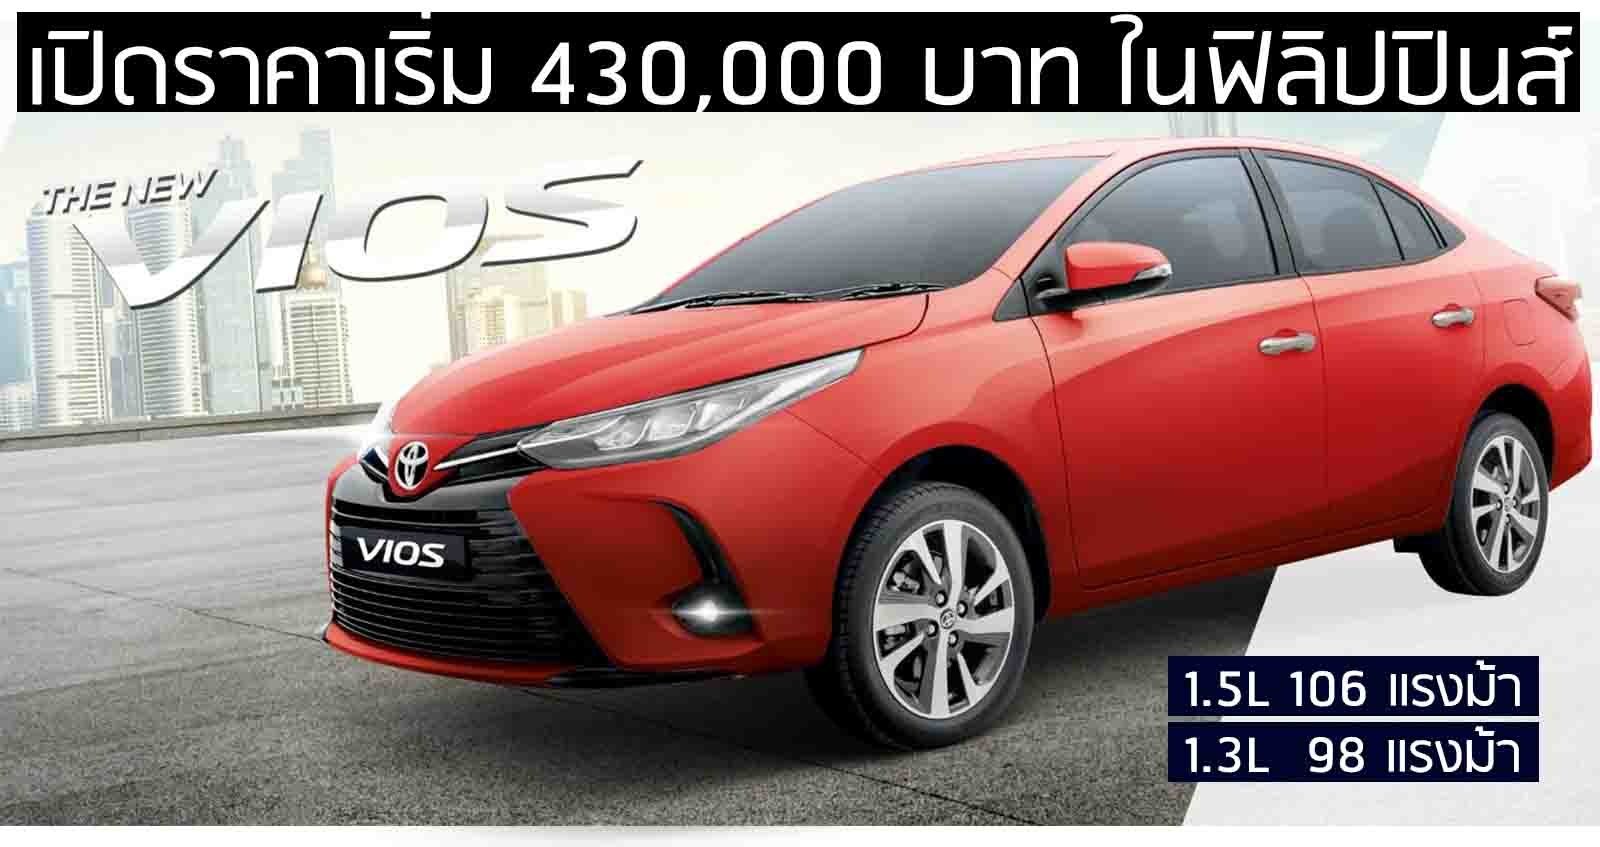 เปิดตัว Toyota Vios รุ่นปรับปรุง เริ่ม 430,000 บาท ใน ฟิลิปปินส์